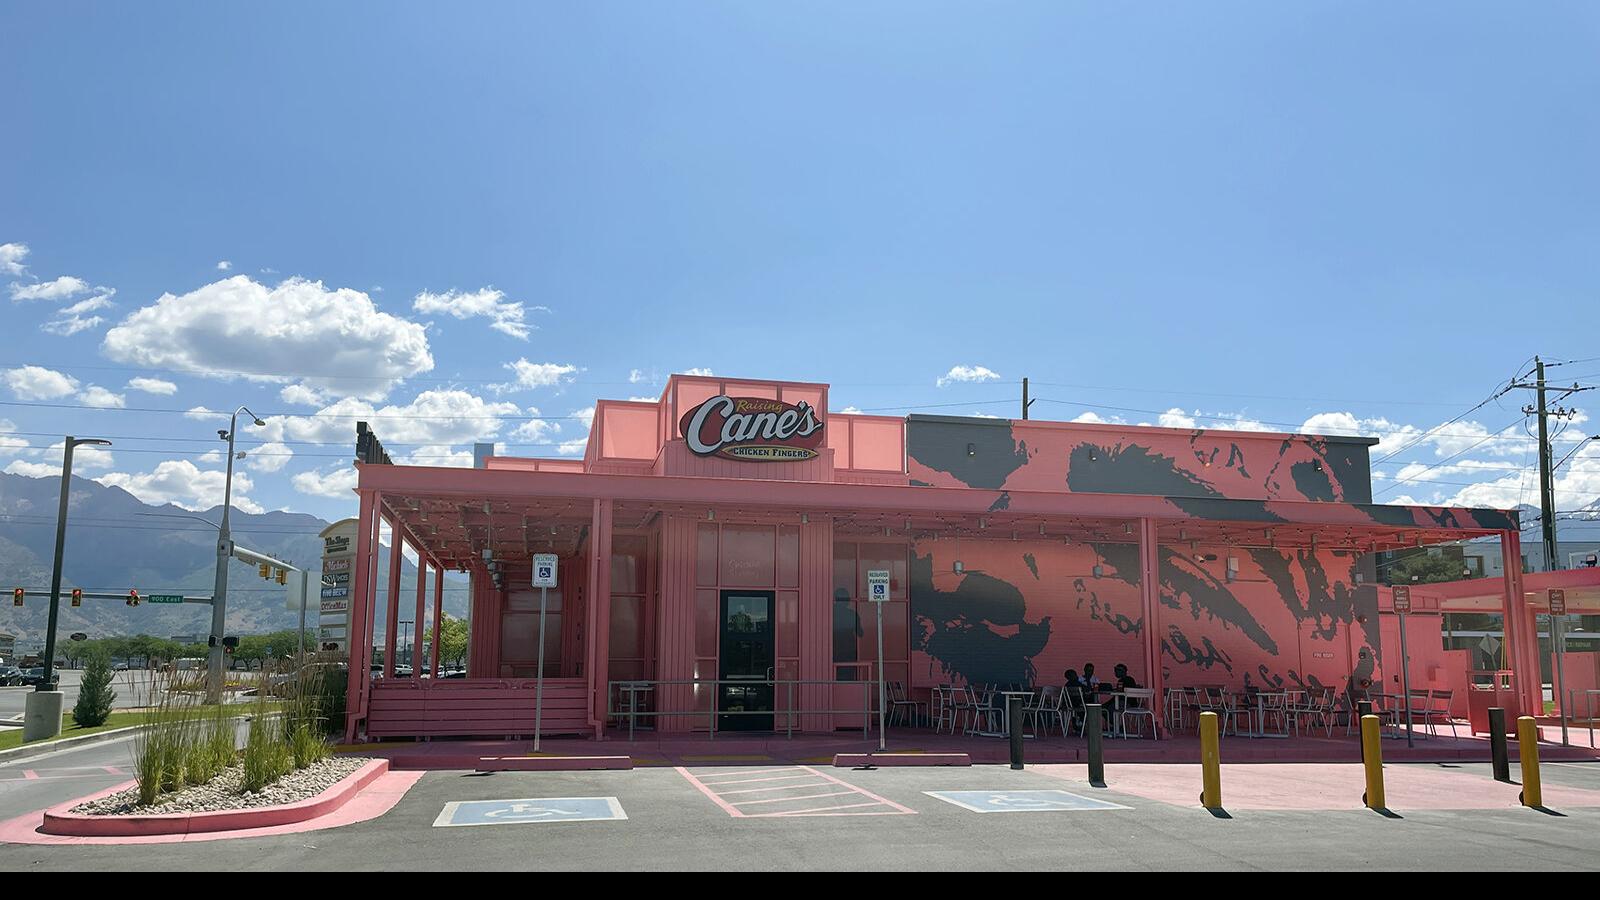 Post Malone Unveils Custom-Designed Raising Cane's Restaurant